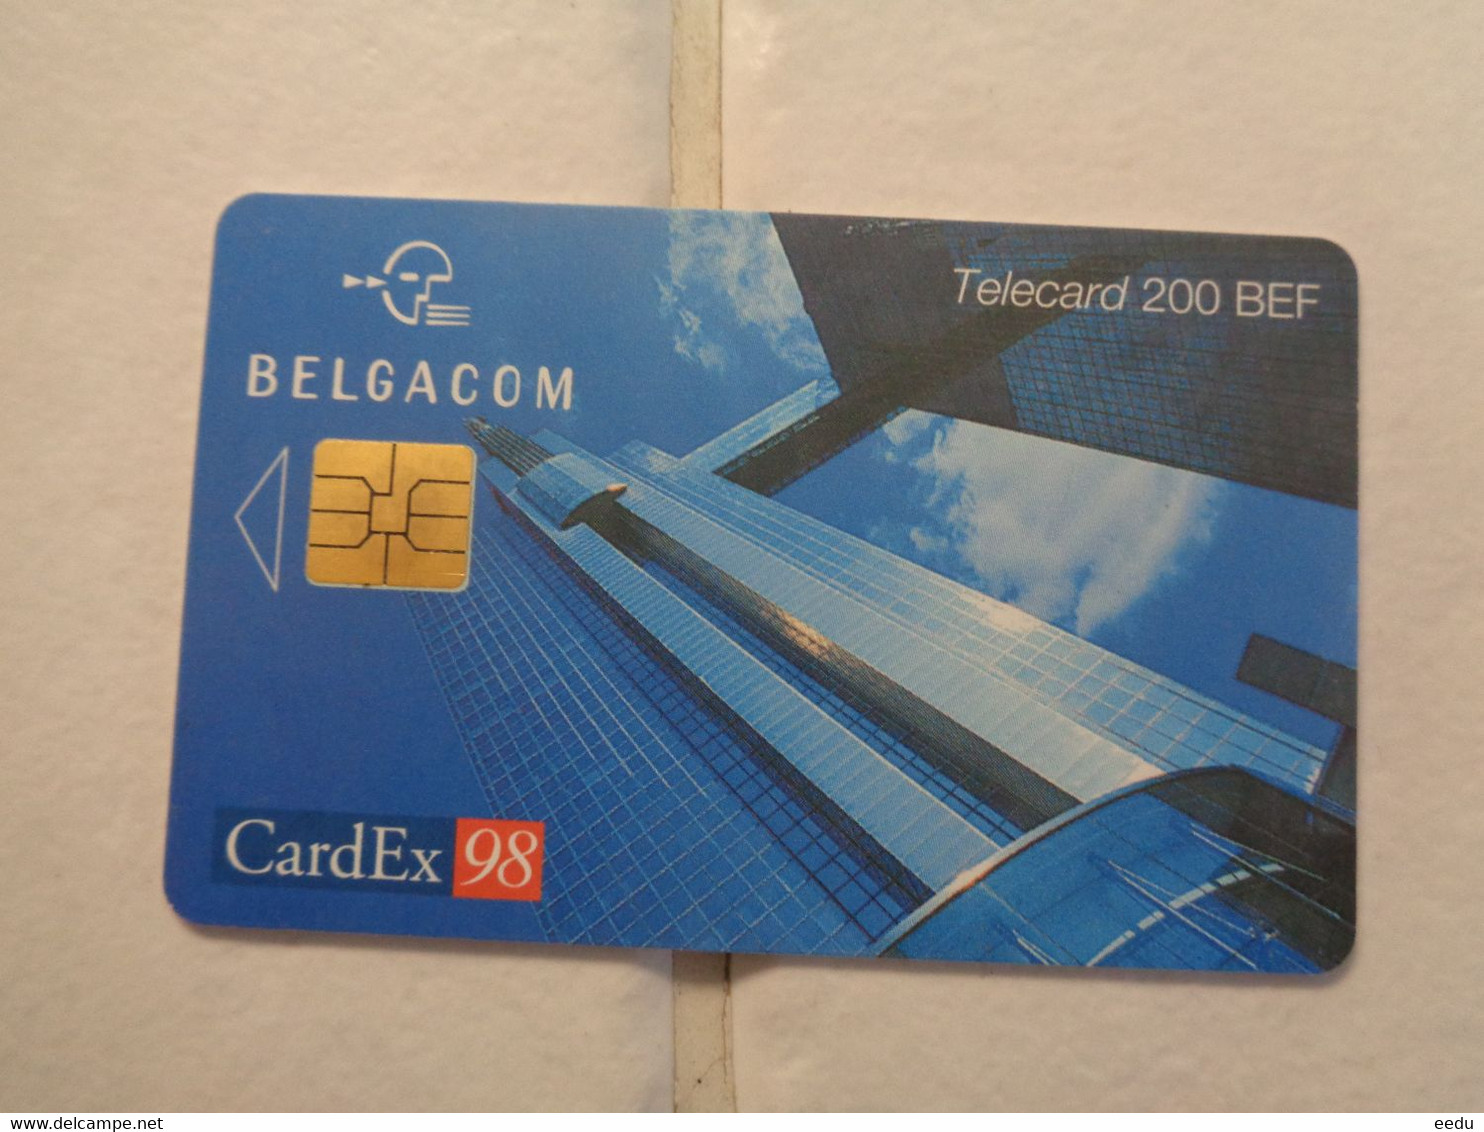 Belgium Phonecard - Con Chip